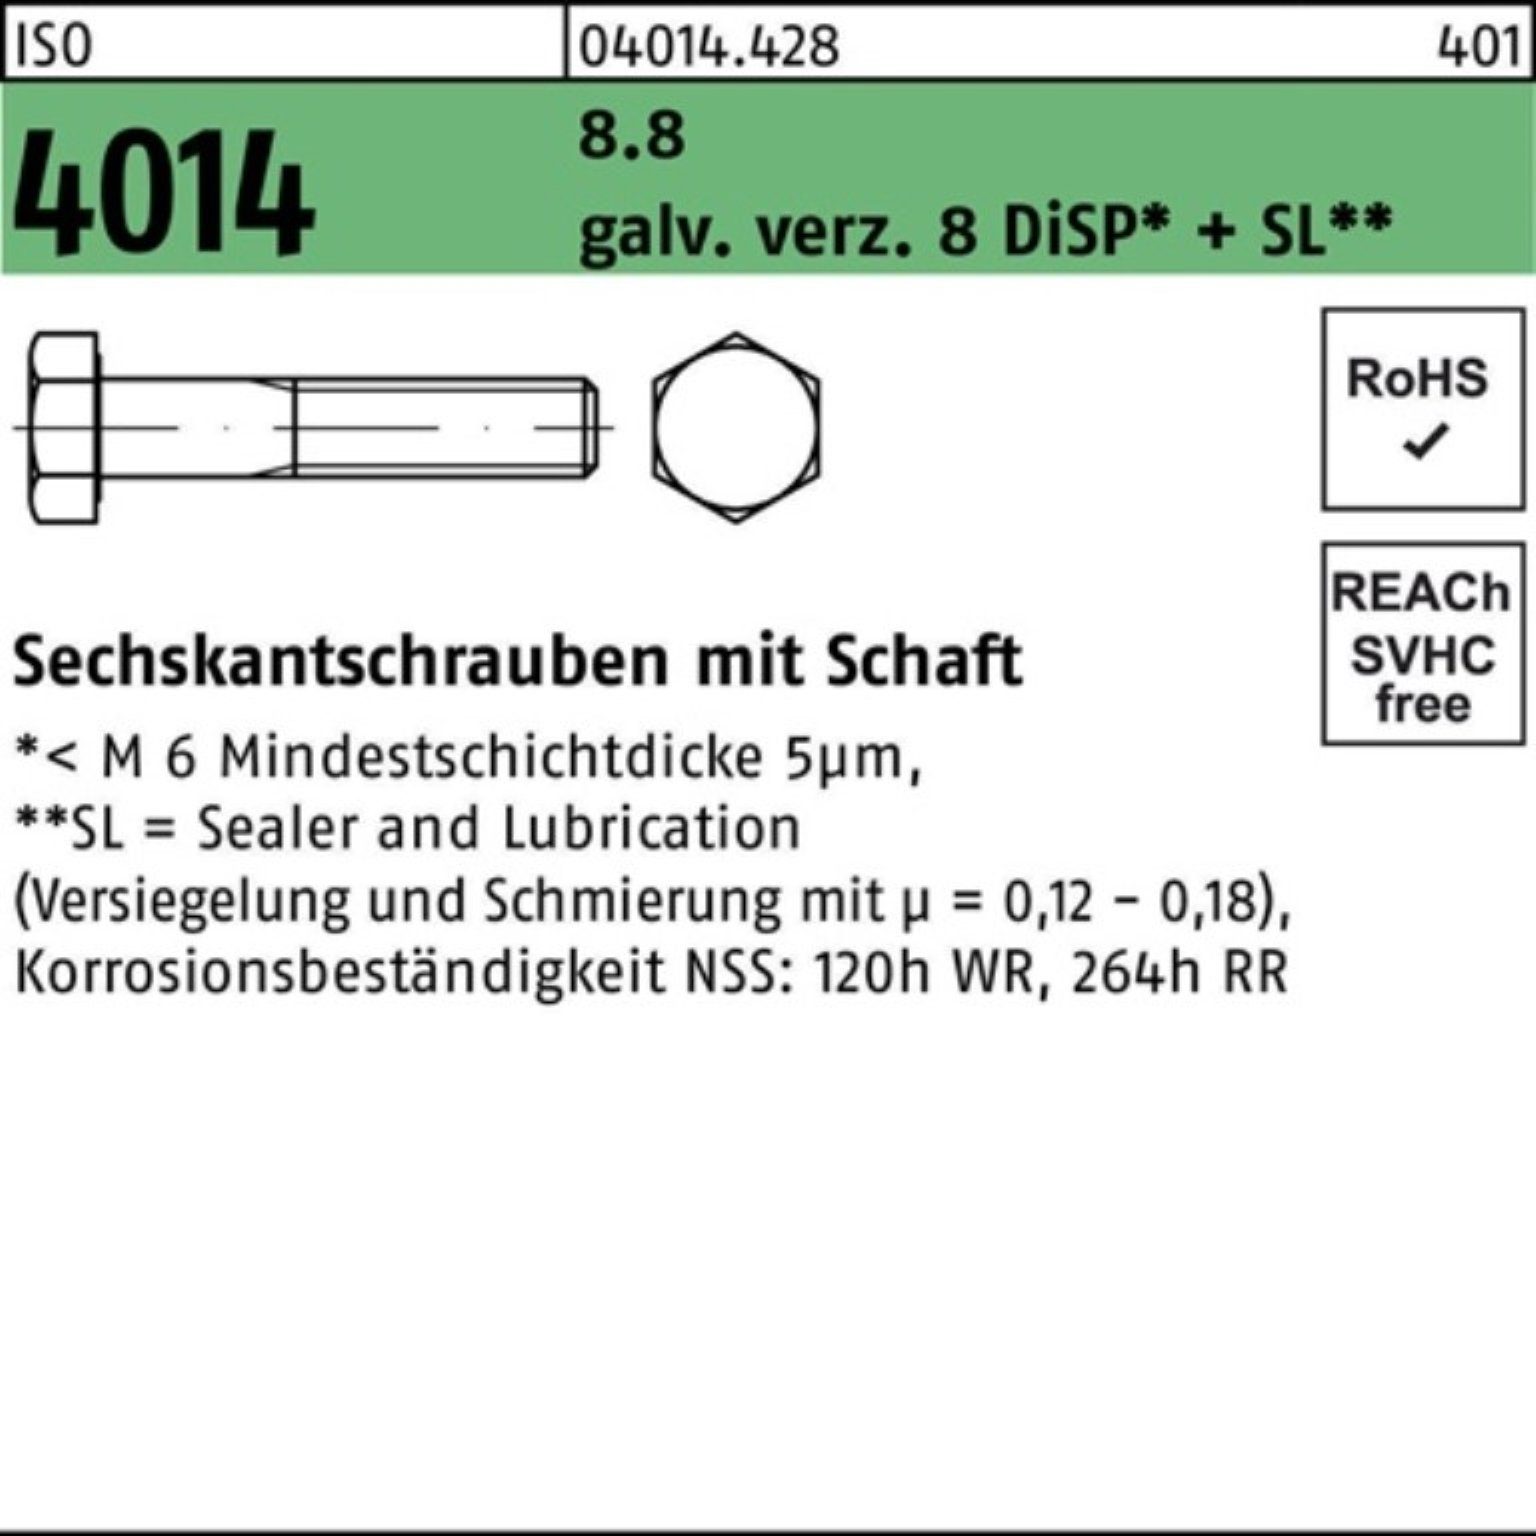 Bufab Sechskantschraube 100er Pack Sechskantschraube 8 ISO 8.8 4014 M10x120 galv.verz. Schaft